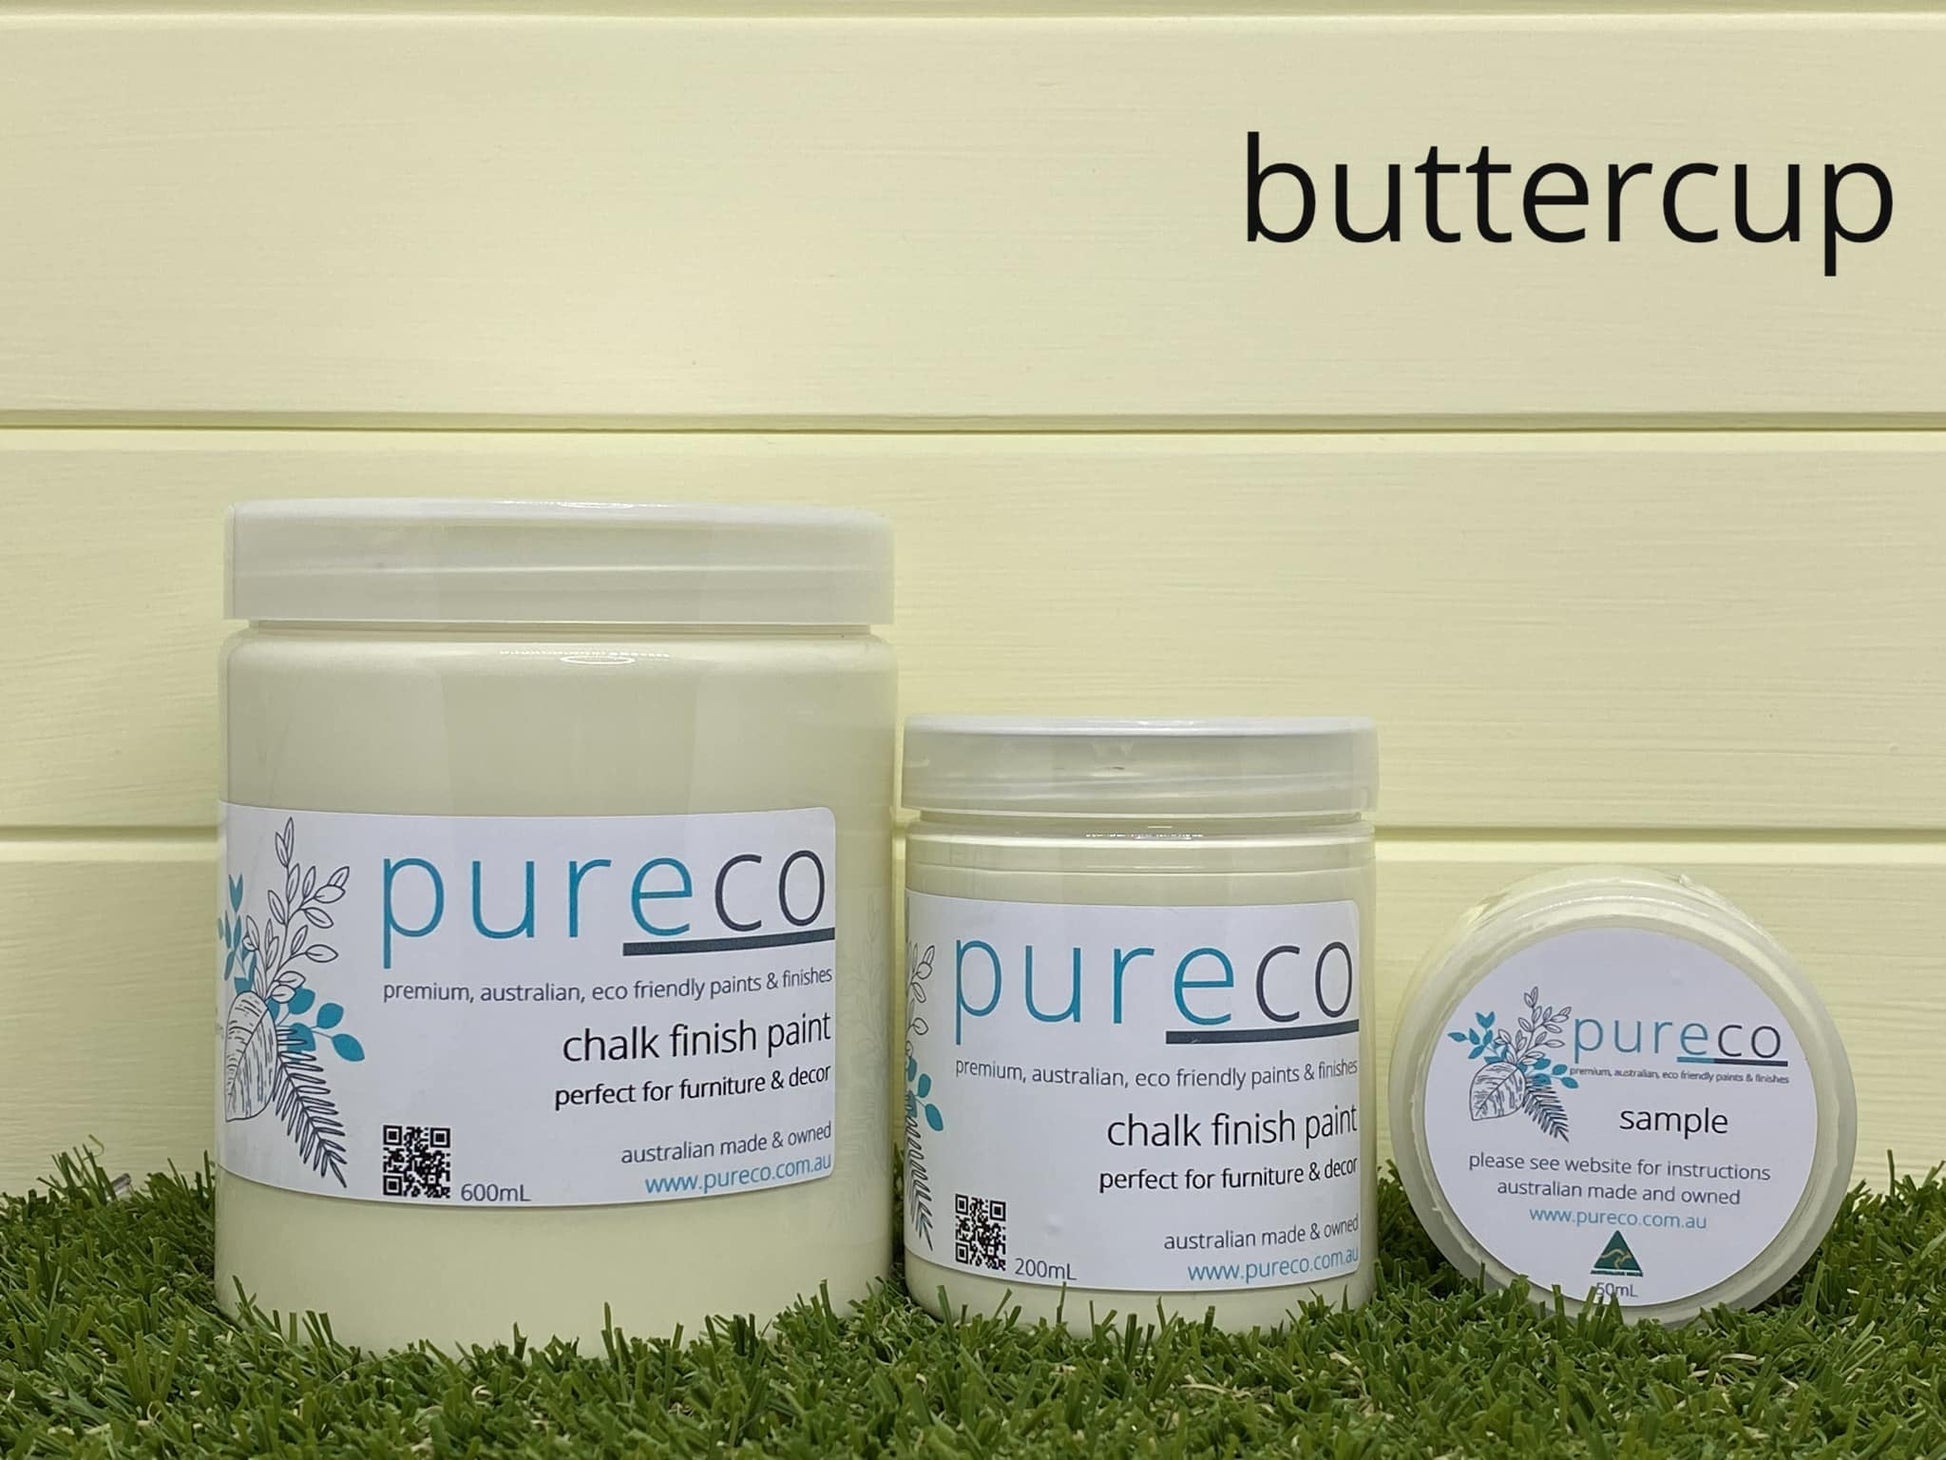 Pureco Chalk Paint Buttercup